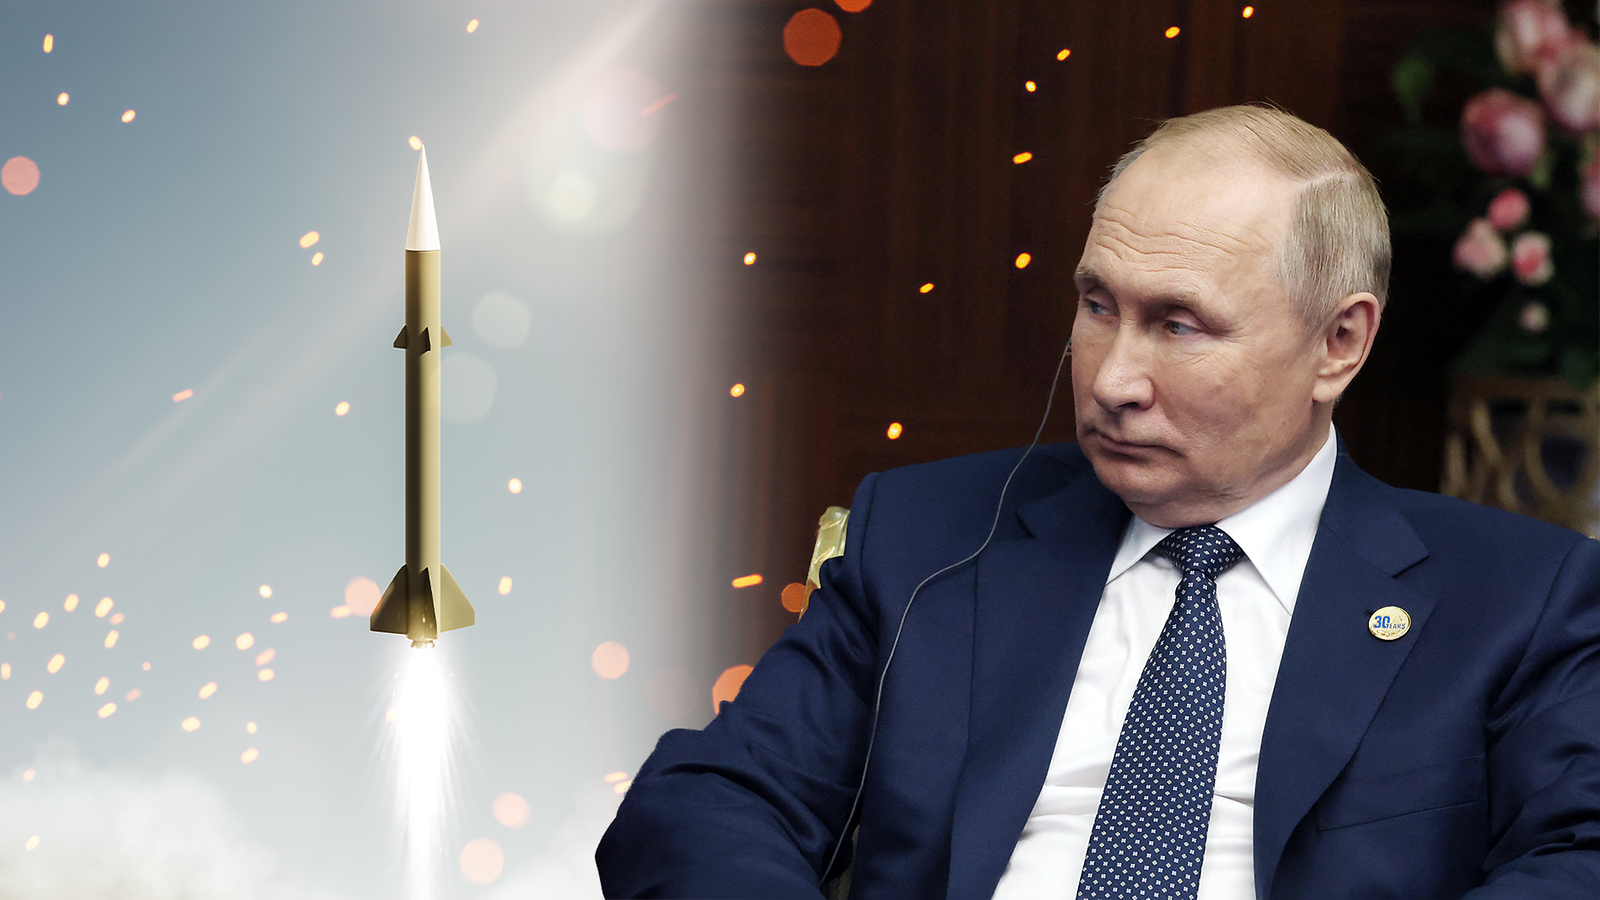 Amerikkalainen asiantuntija uskoo Putinin harkitsevan ydinaseiden käyttöä -  